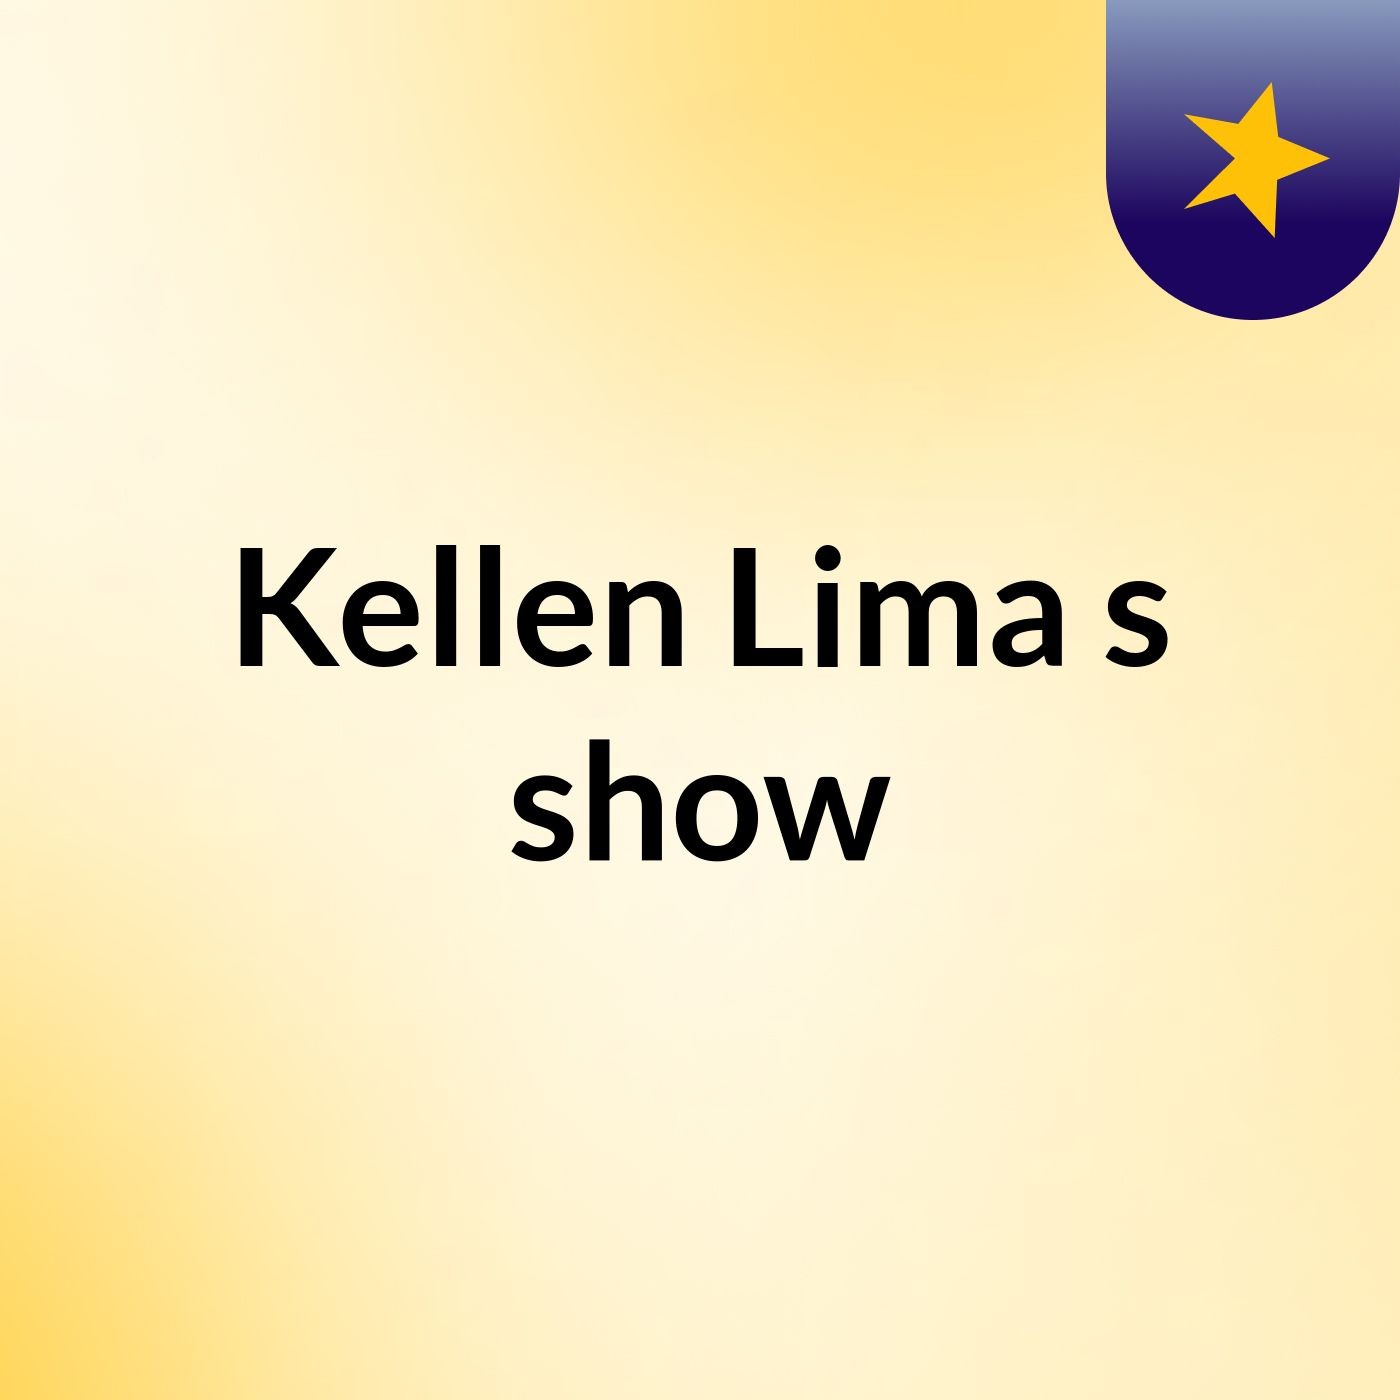 Kellen Lima's show